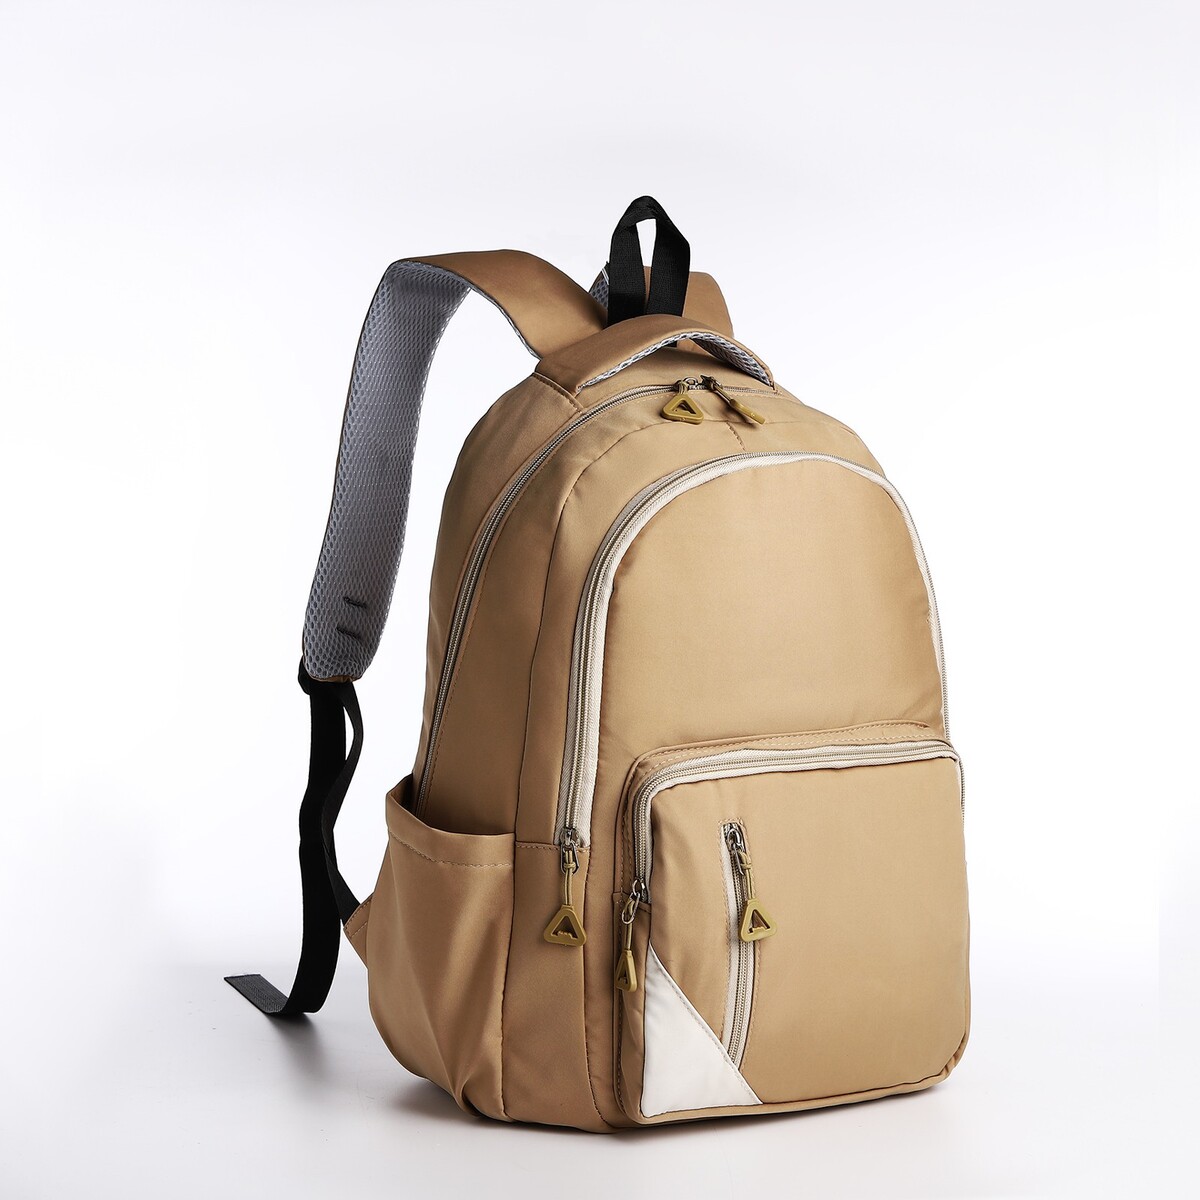 Рюкзак молодежный из текстиля, 2 отдела, 3 кармана, цвет бежевый рюкзак школьный из текстиля 3 кармана белый бежевый